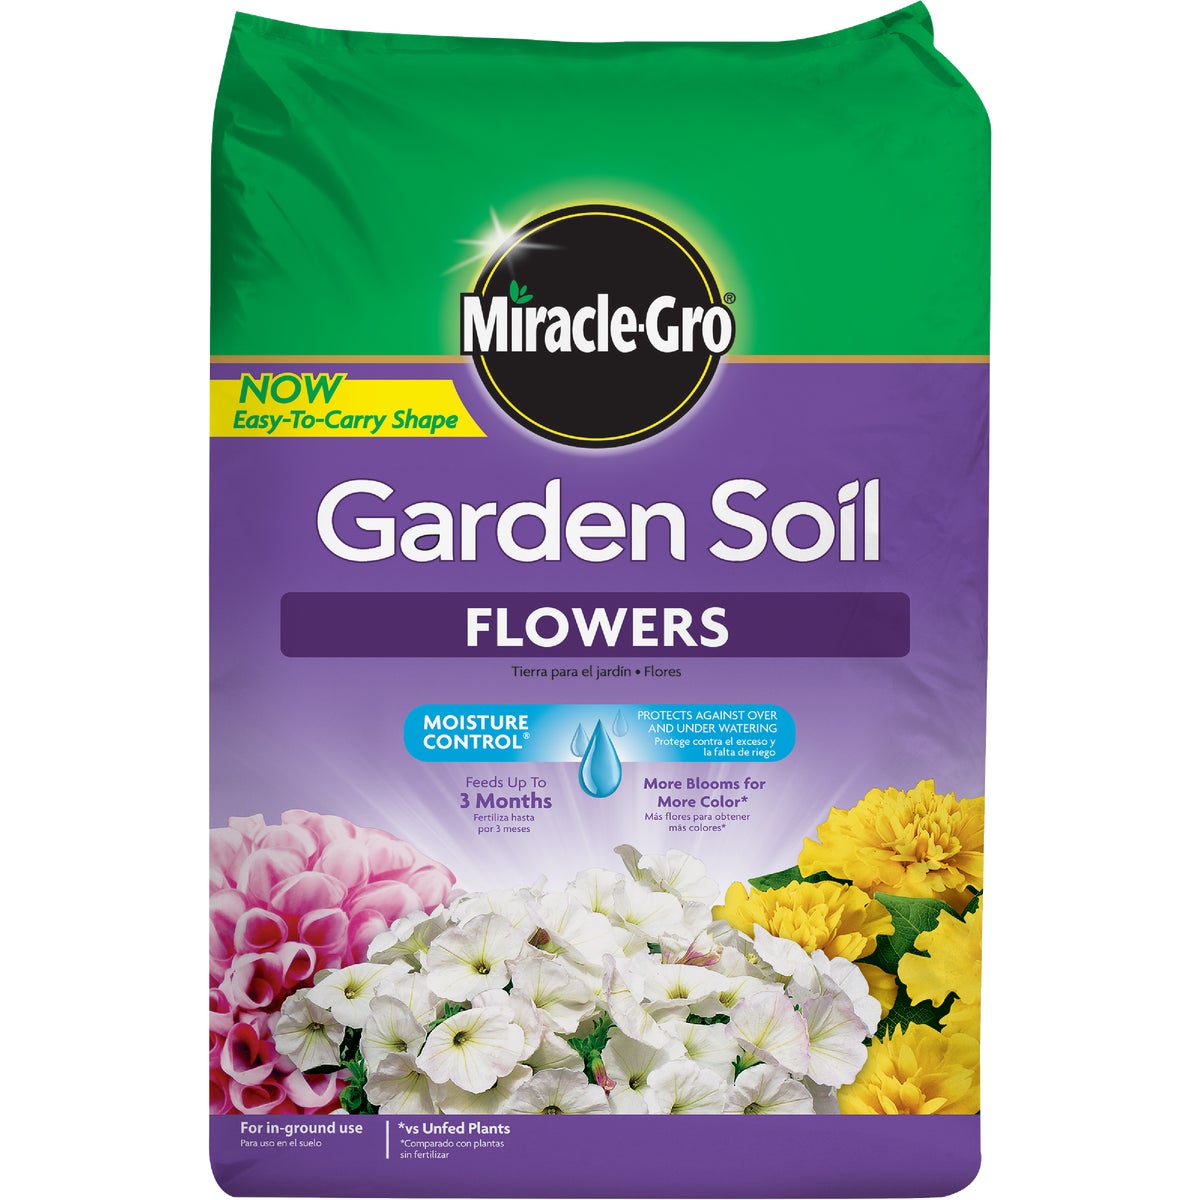 Item 704428, Miracle-Gro garden soil for flowers.